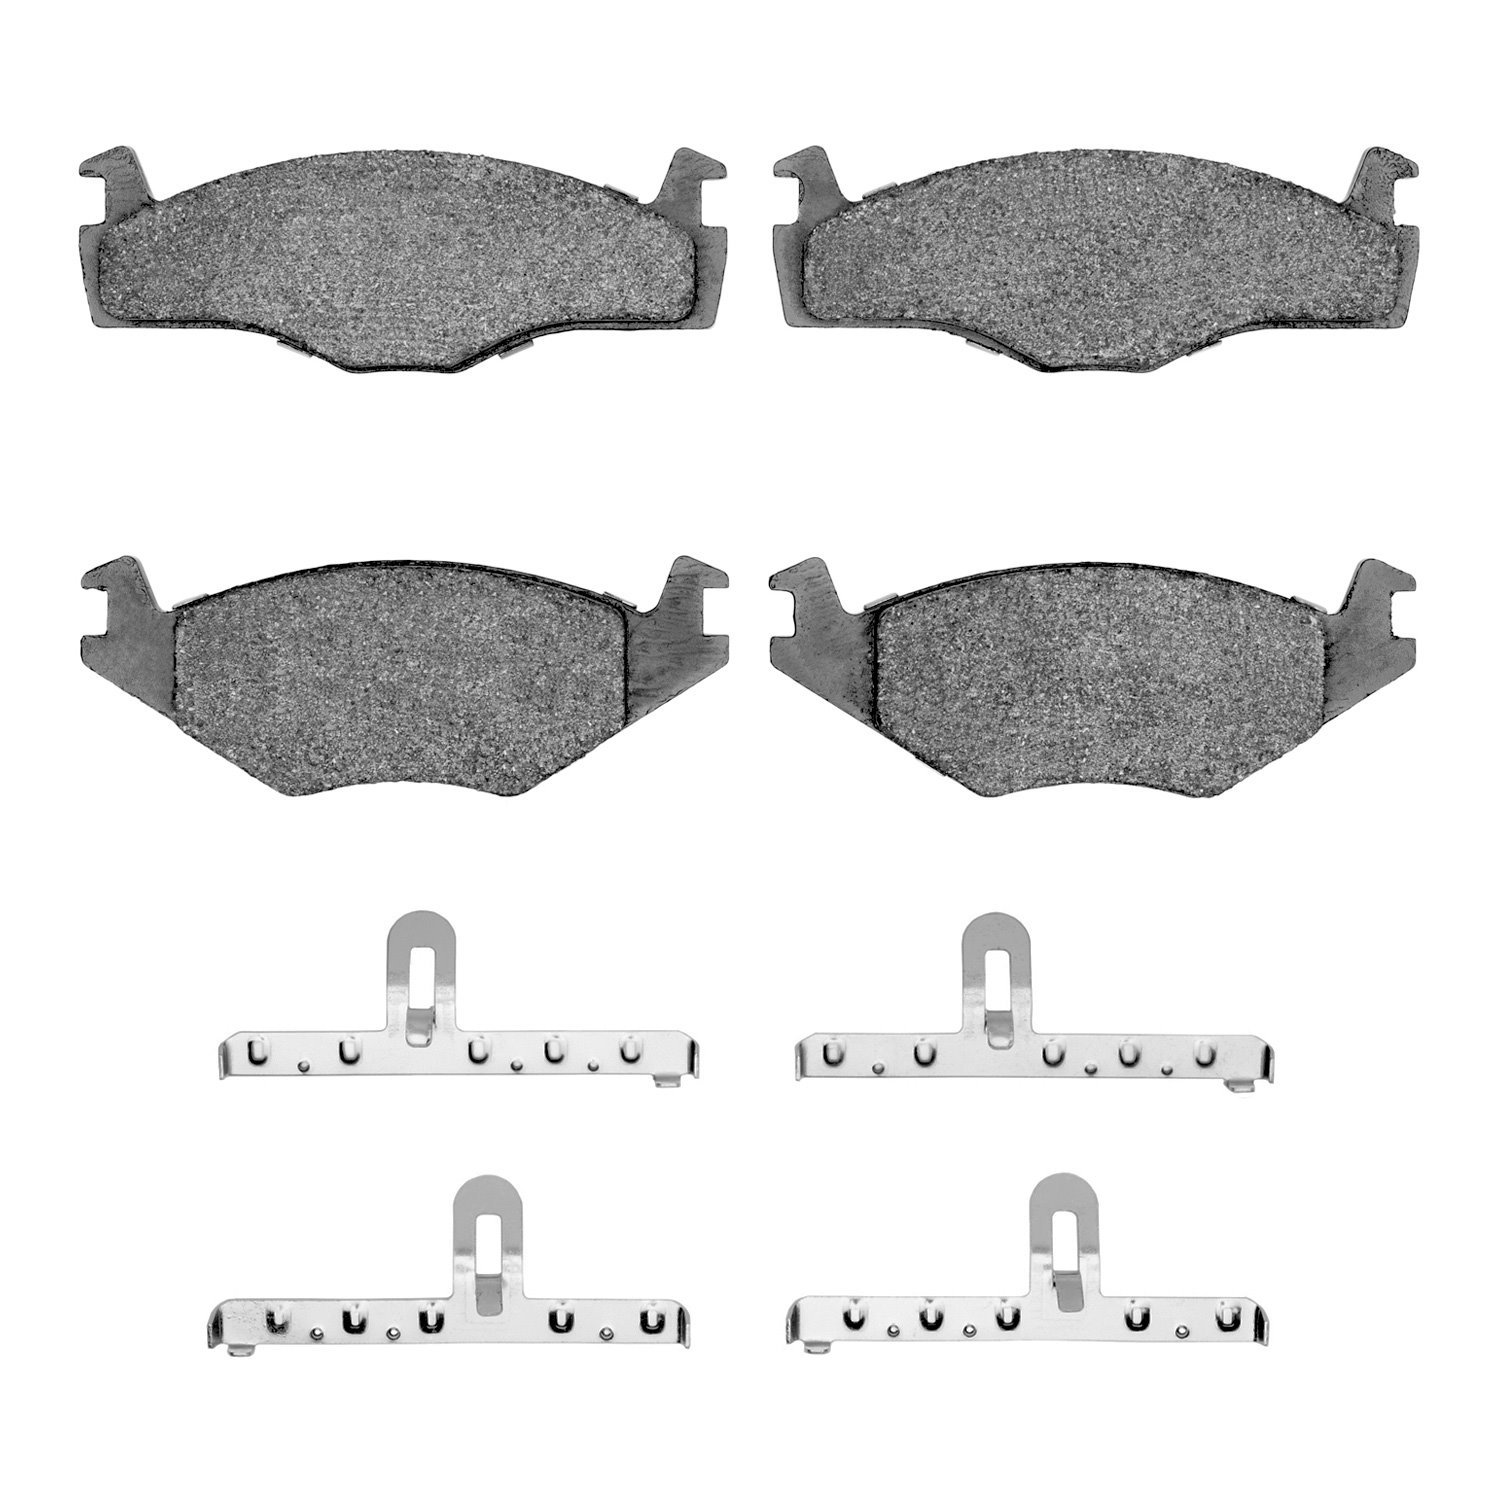 1311-0569-01 3000-Series Semi-Metallic Brake Pads & Hardware Kit, 1984-1993 Audi/Volkswagen, Position: Front